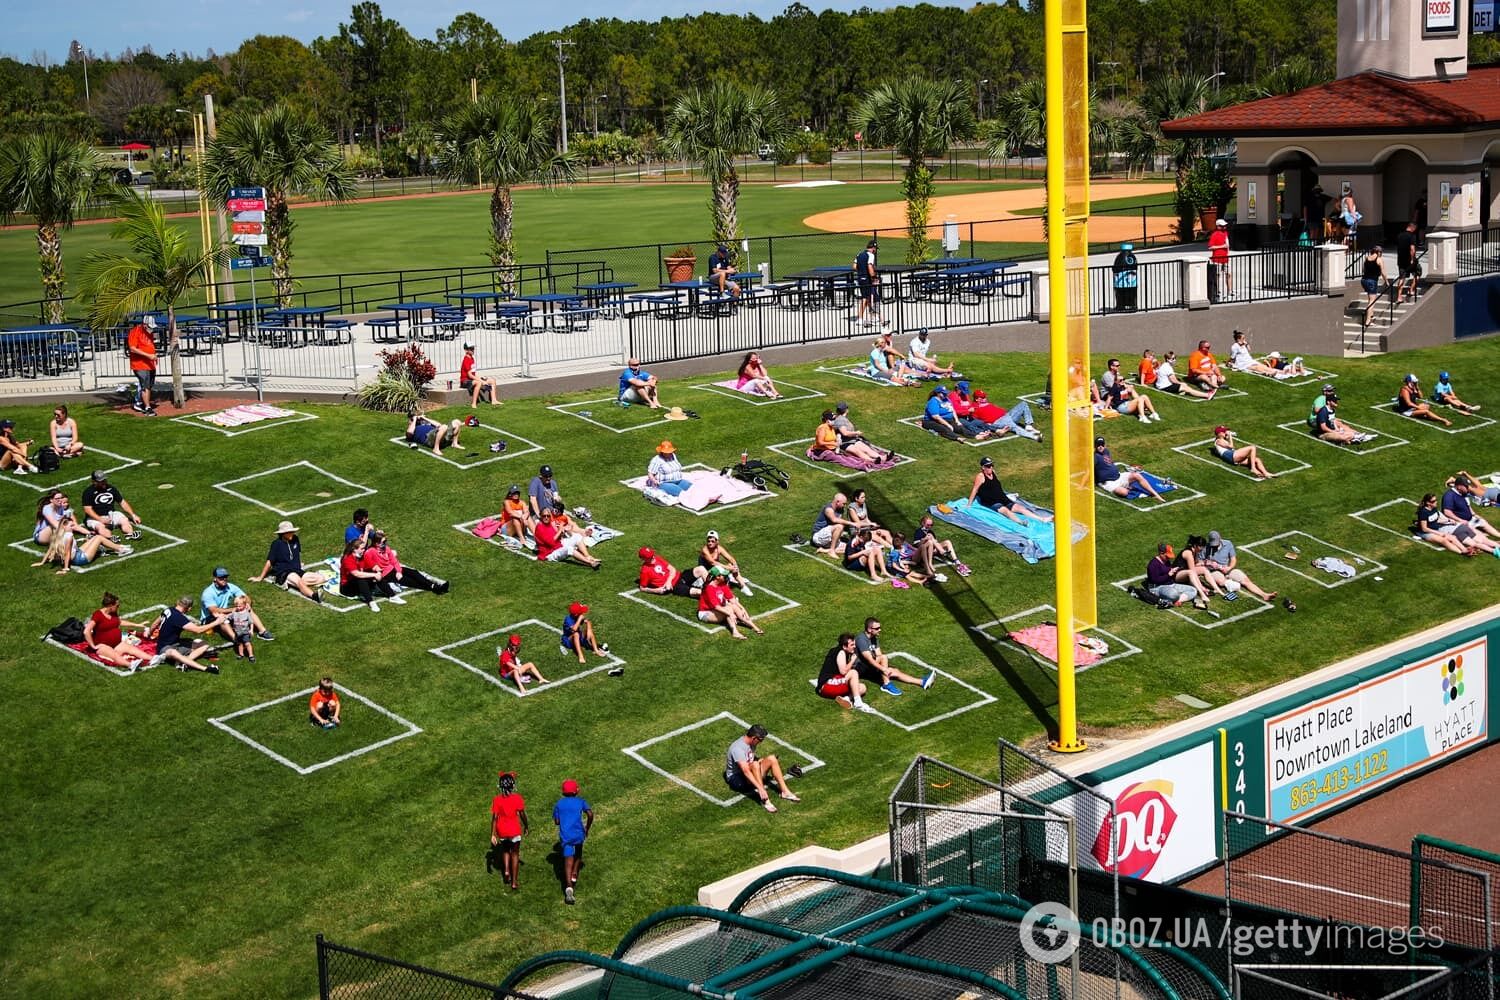 Поклонники сидели в социальных прямоугольниках, нарисованных на траве за левым полем во время весенних тренировочных игр по американскому футболу на стадионе Detroit Tigers в Лейкленде, штат Флорида